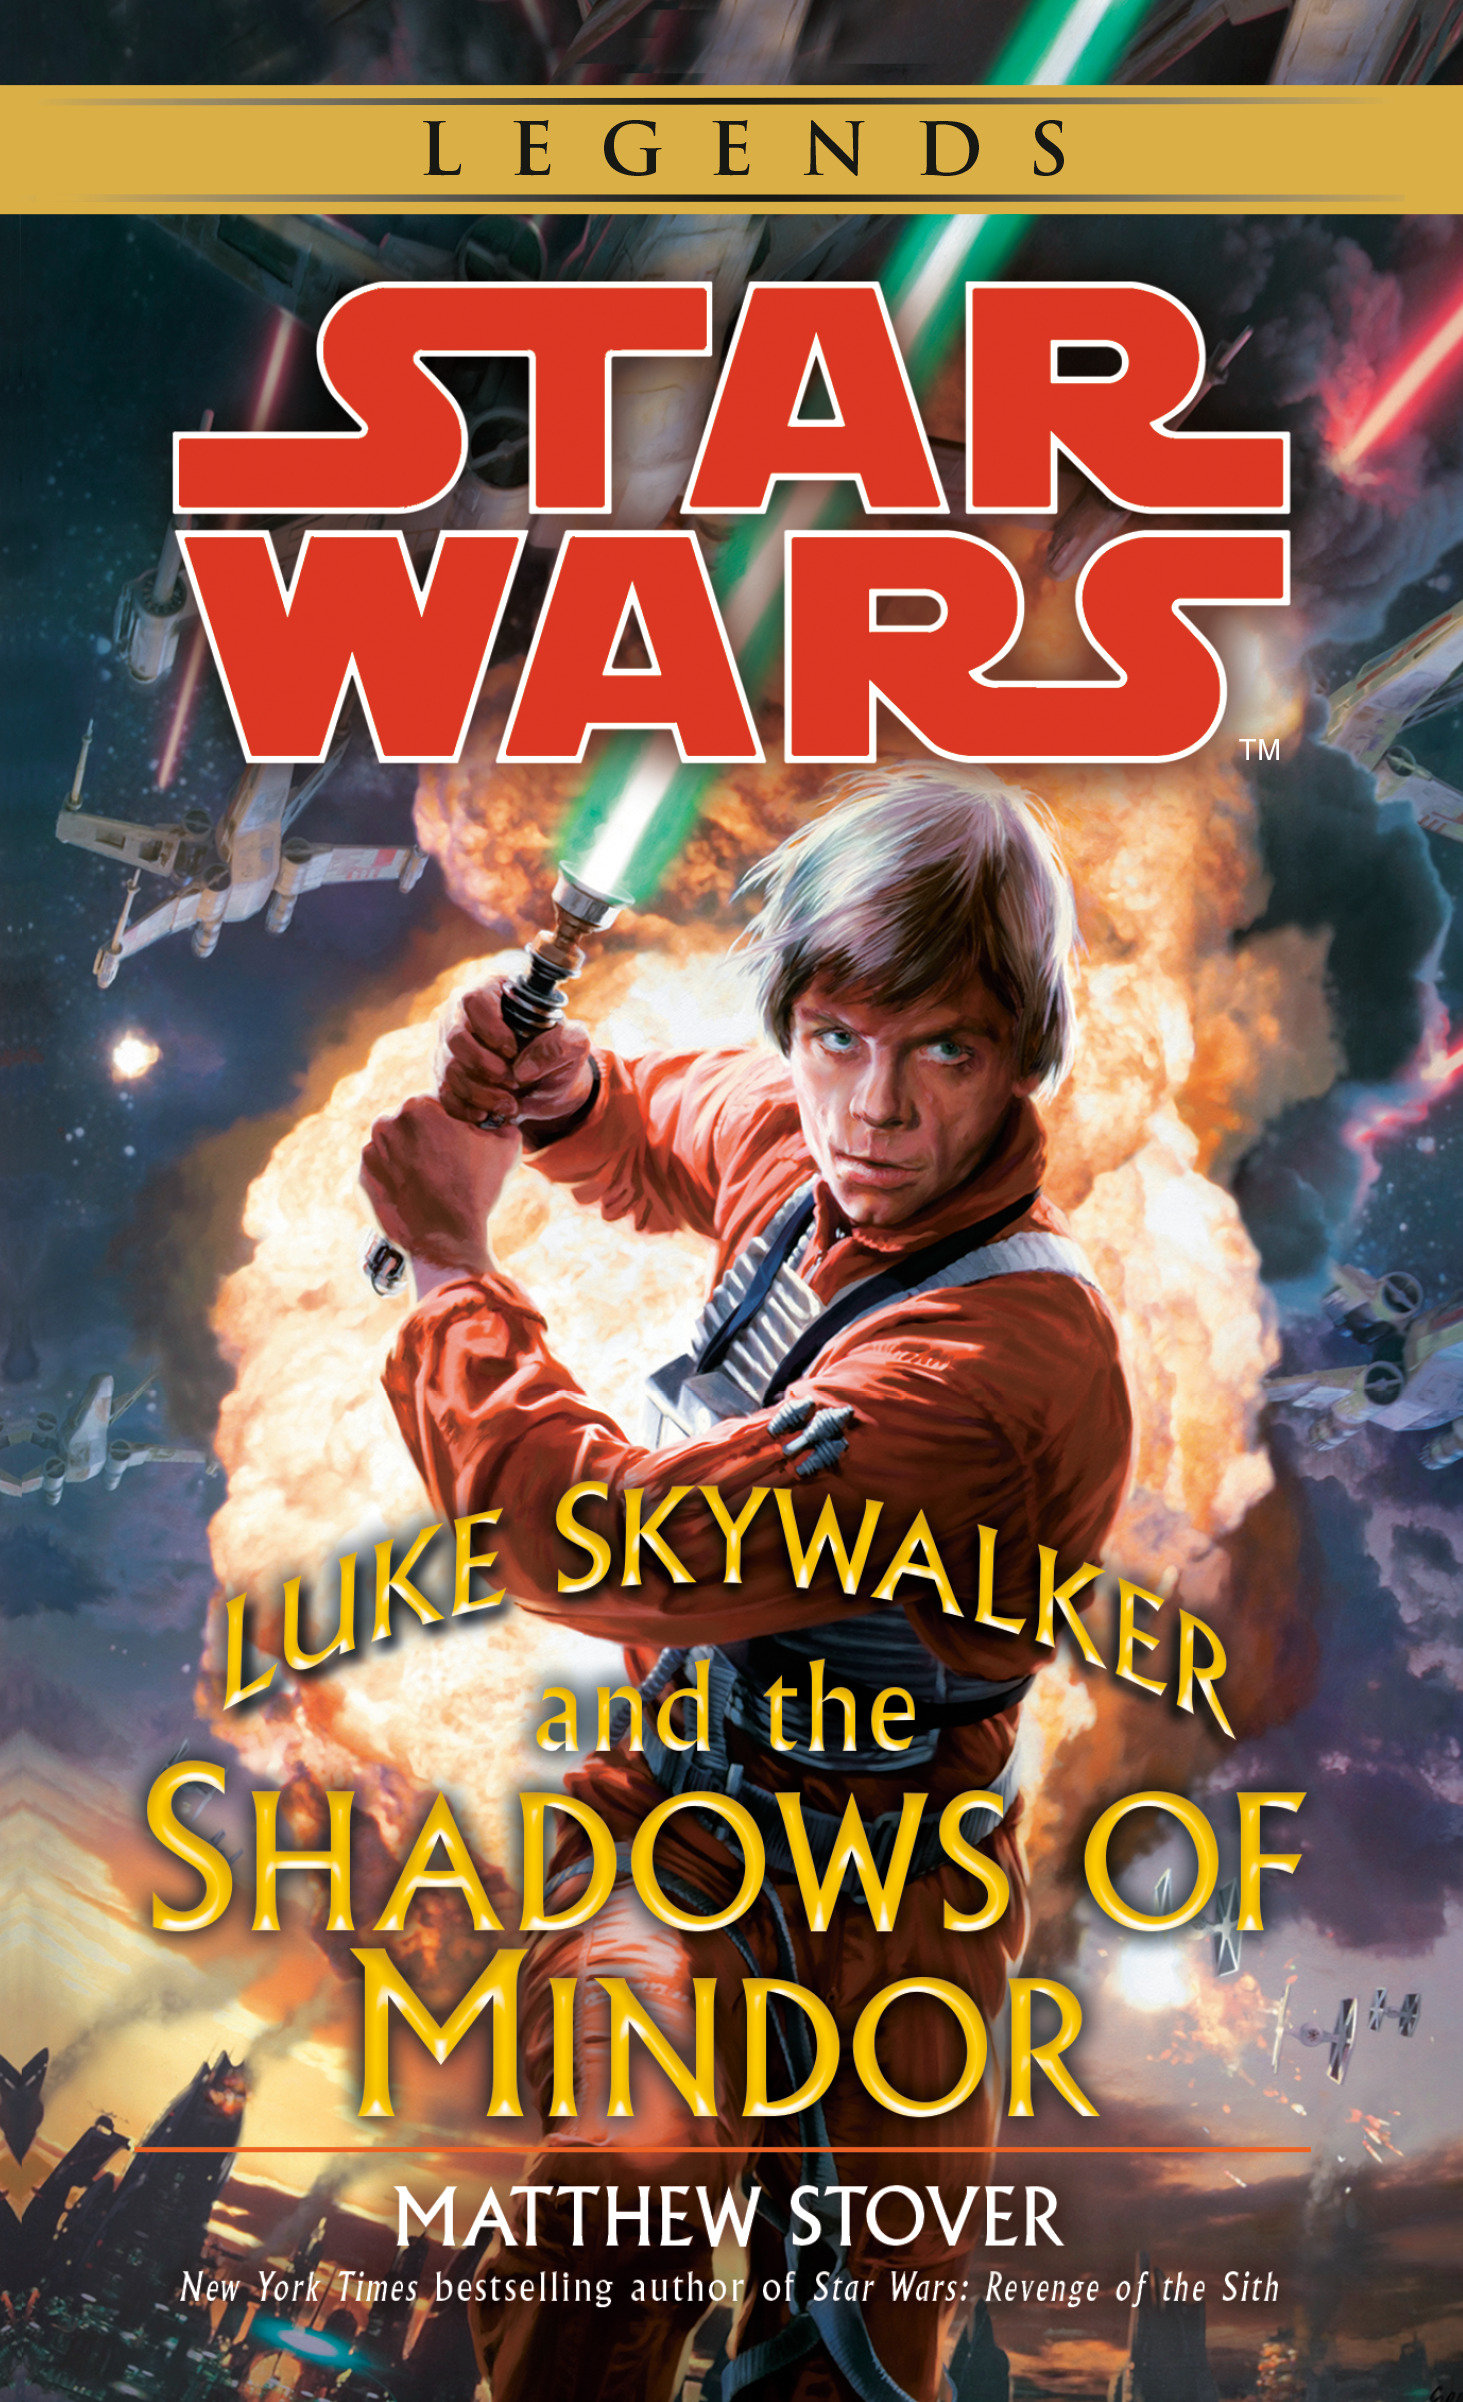 Star Wars Legends: Luke Skywalker and the Shadows of Mindor (November 2020)